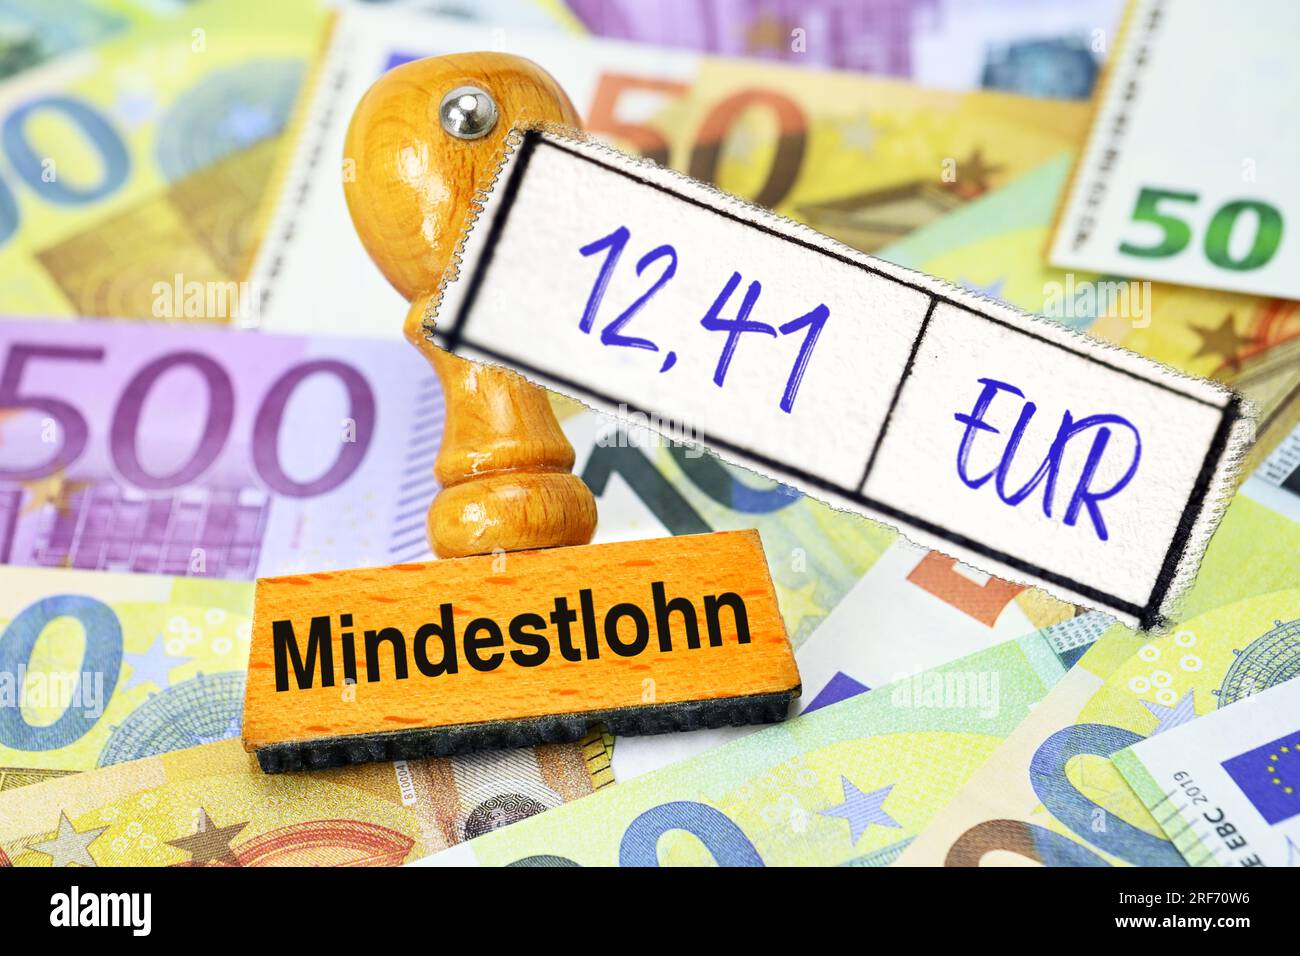 FOTOMONTAGE, Stempel mit Aufschrift Mindestlohn und Zettel mit Aufschrift 12,41 EUR auf Geldscheinen Stockfoto